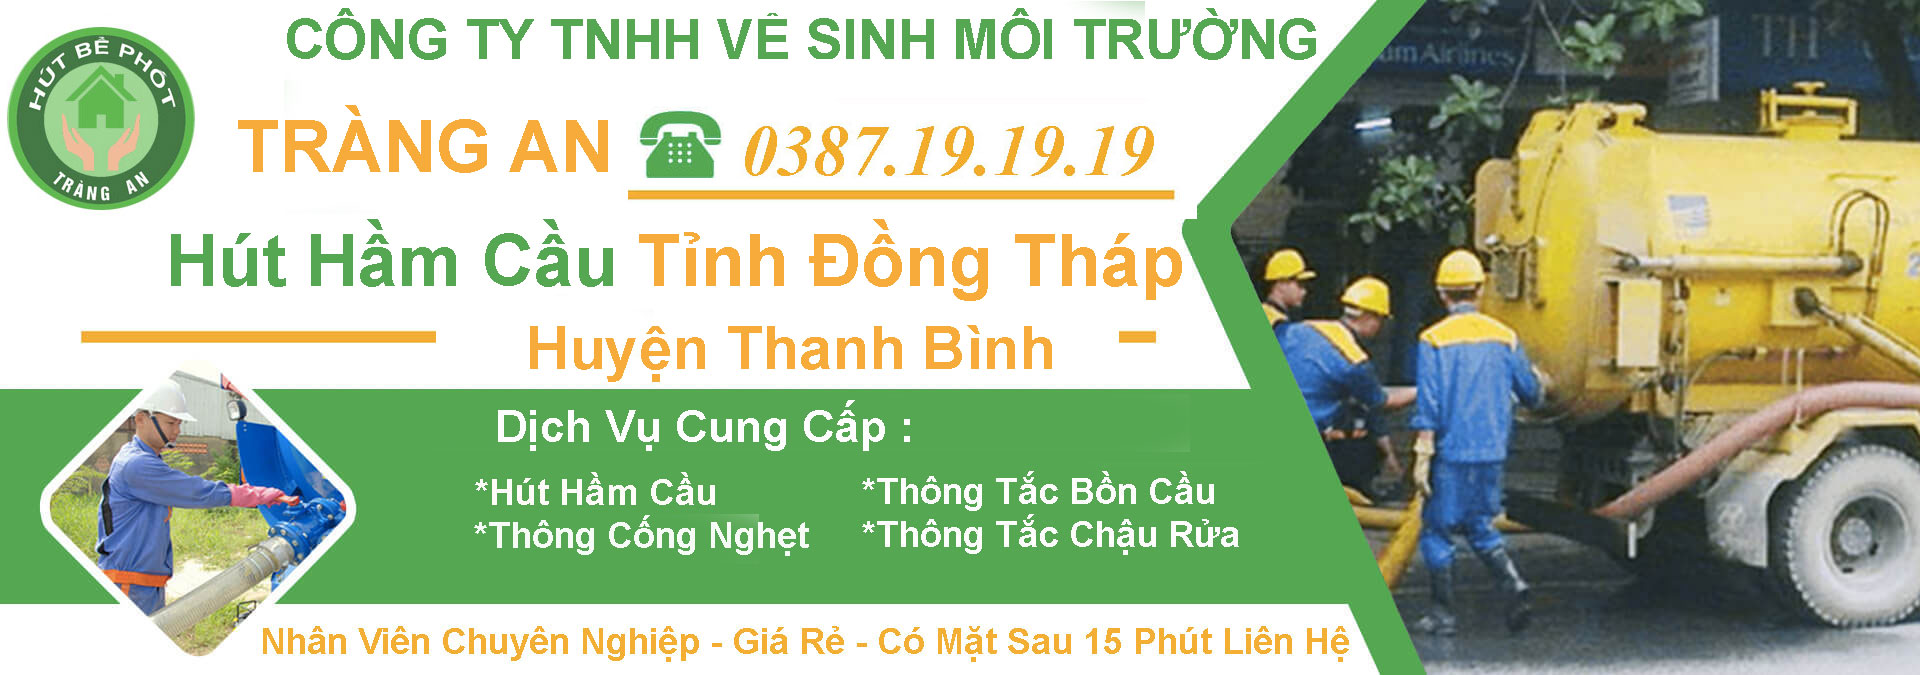 Hut Ham Cau Tinh Dong Thap Huyen Thanh Binh